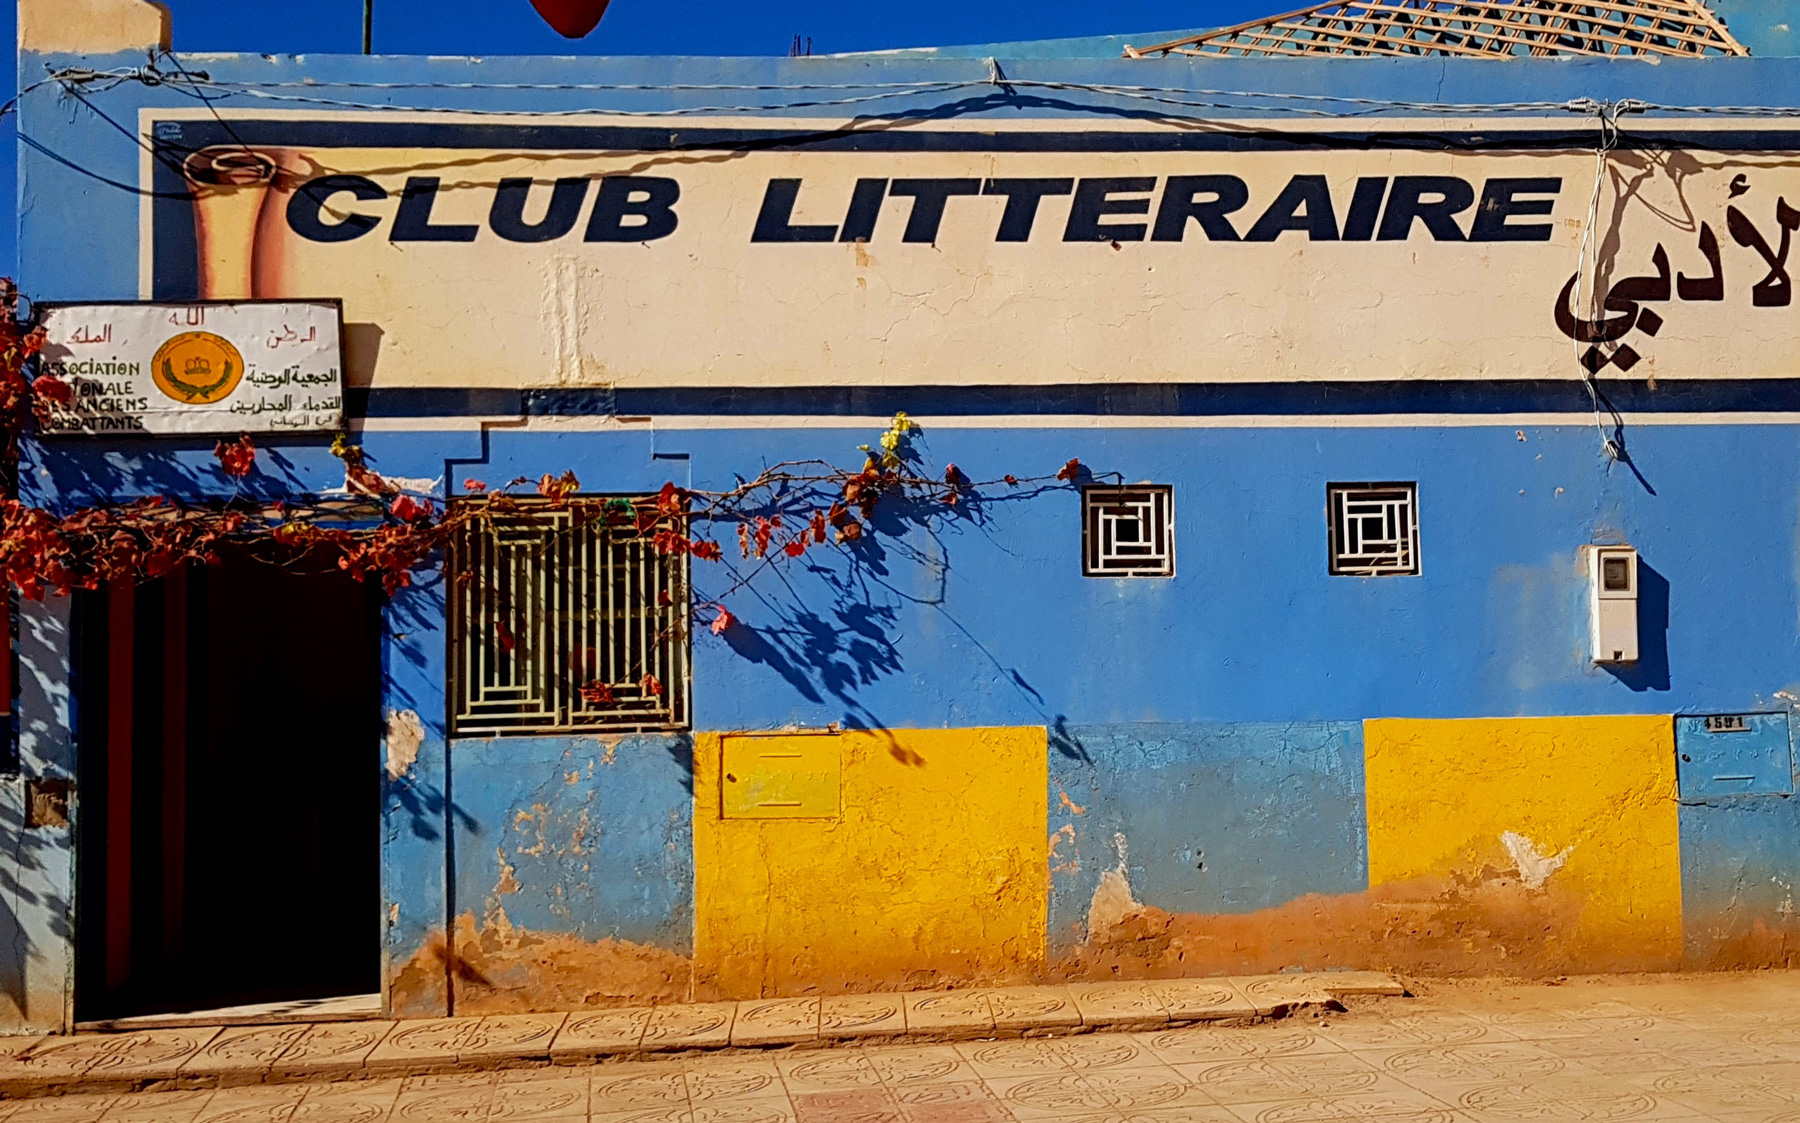 Club litteraire